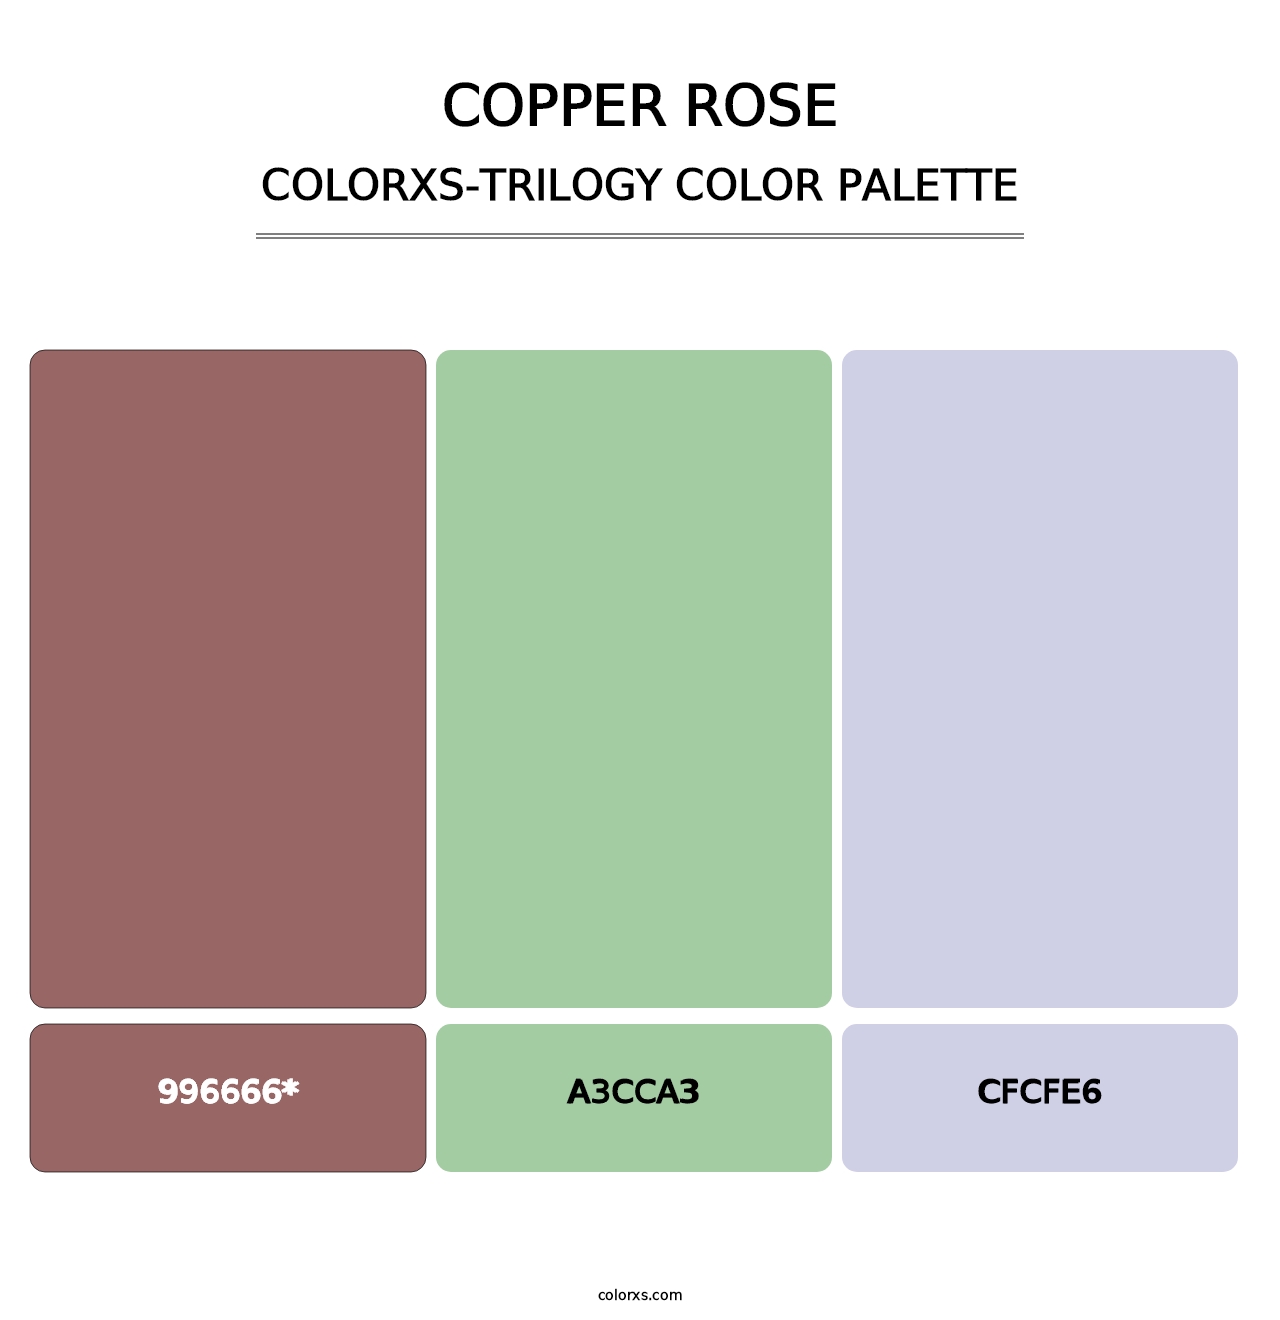 Copper rose - Colorxs Trilogy Palette